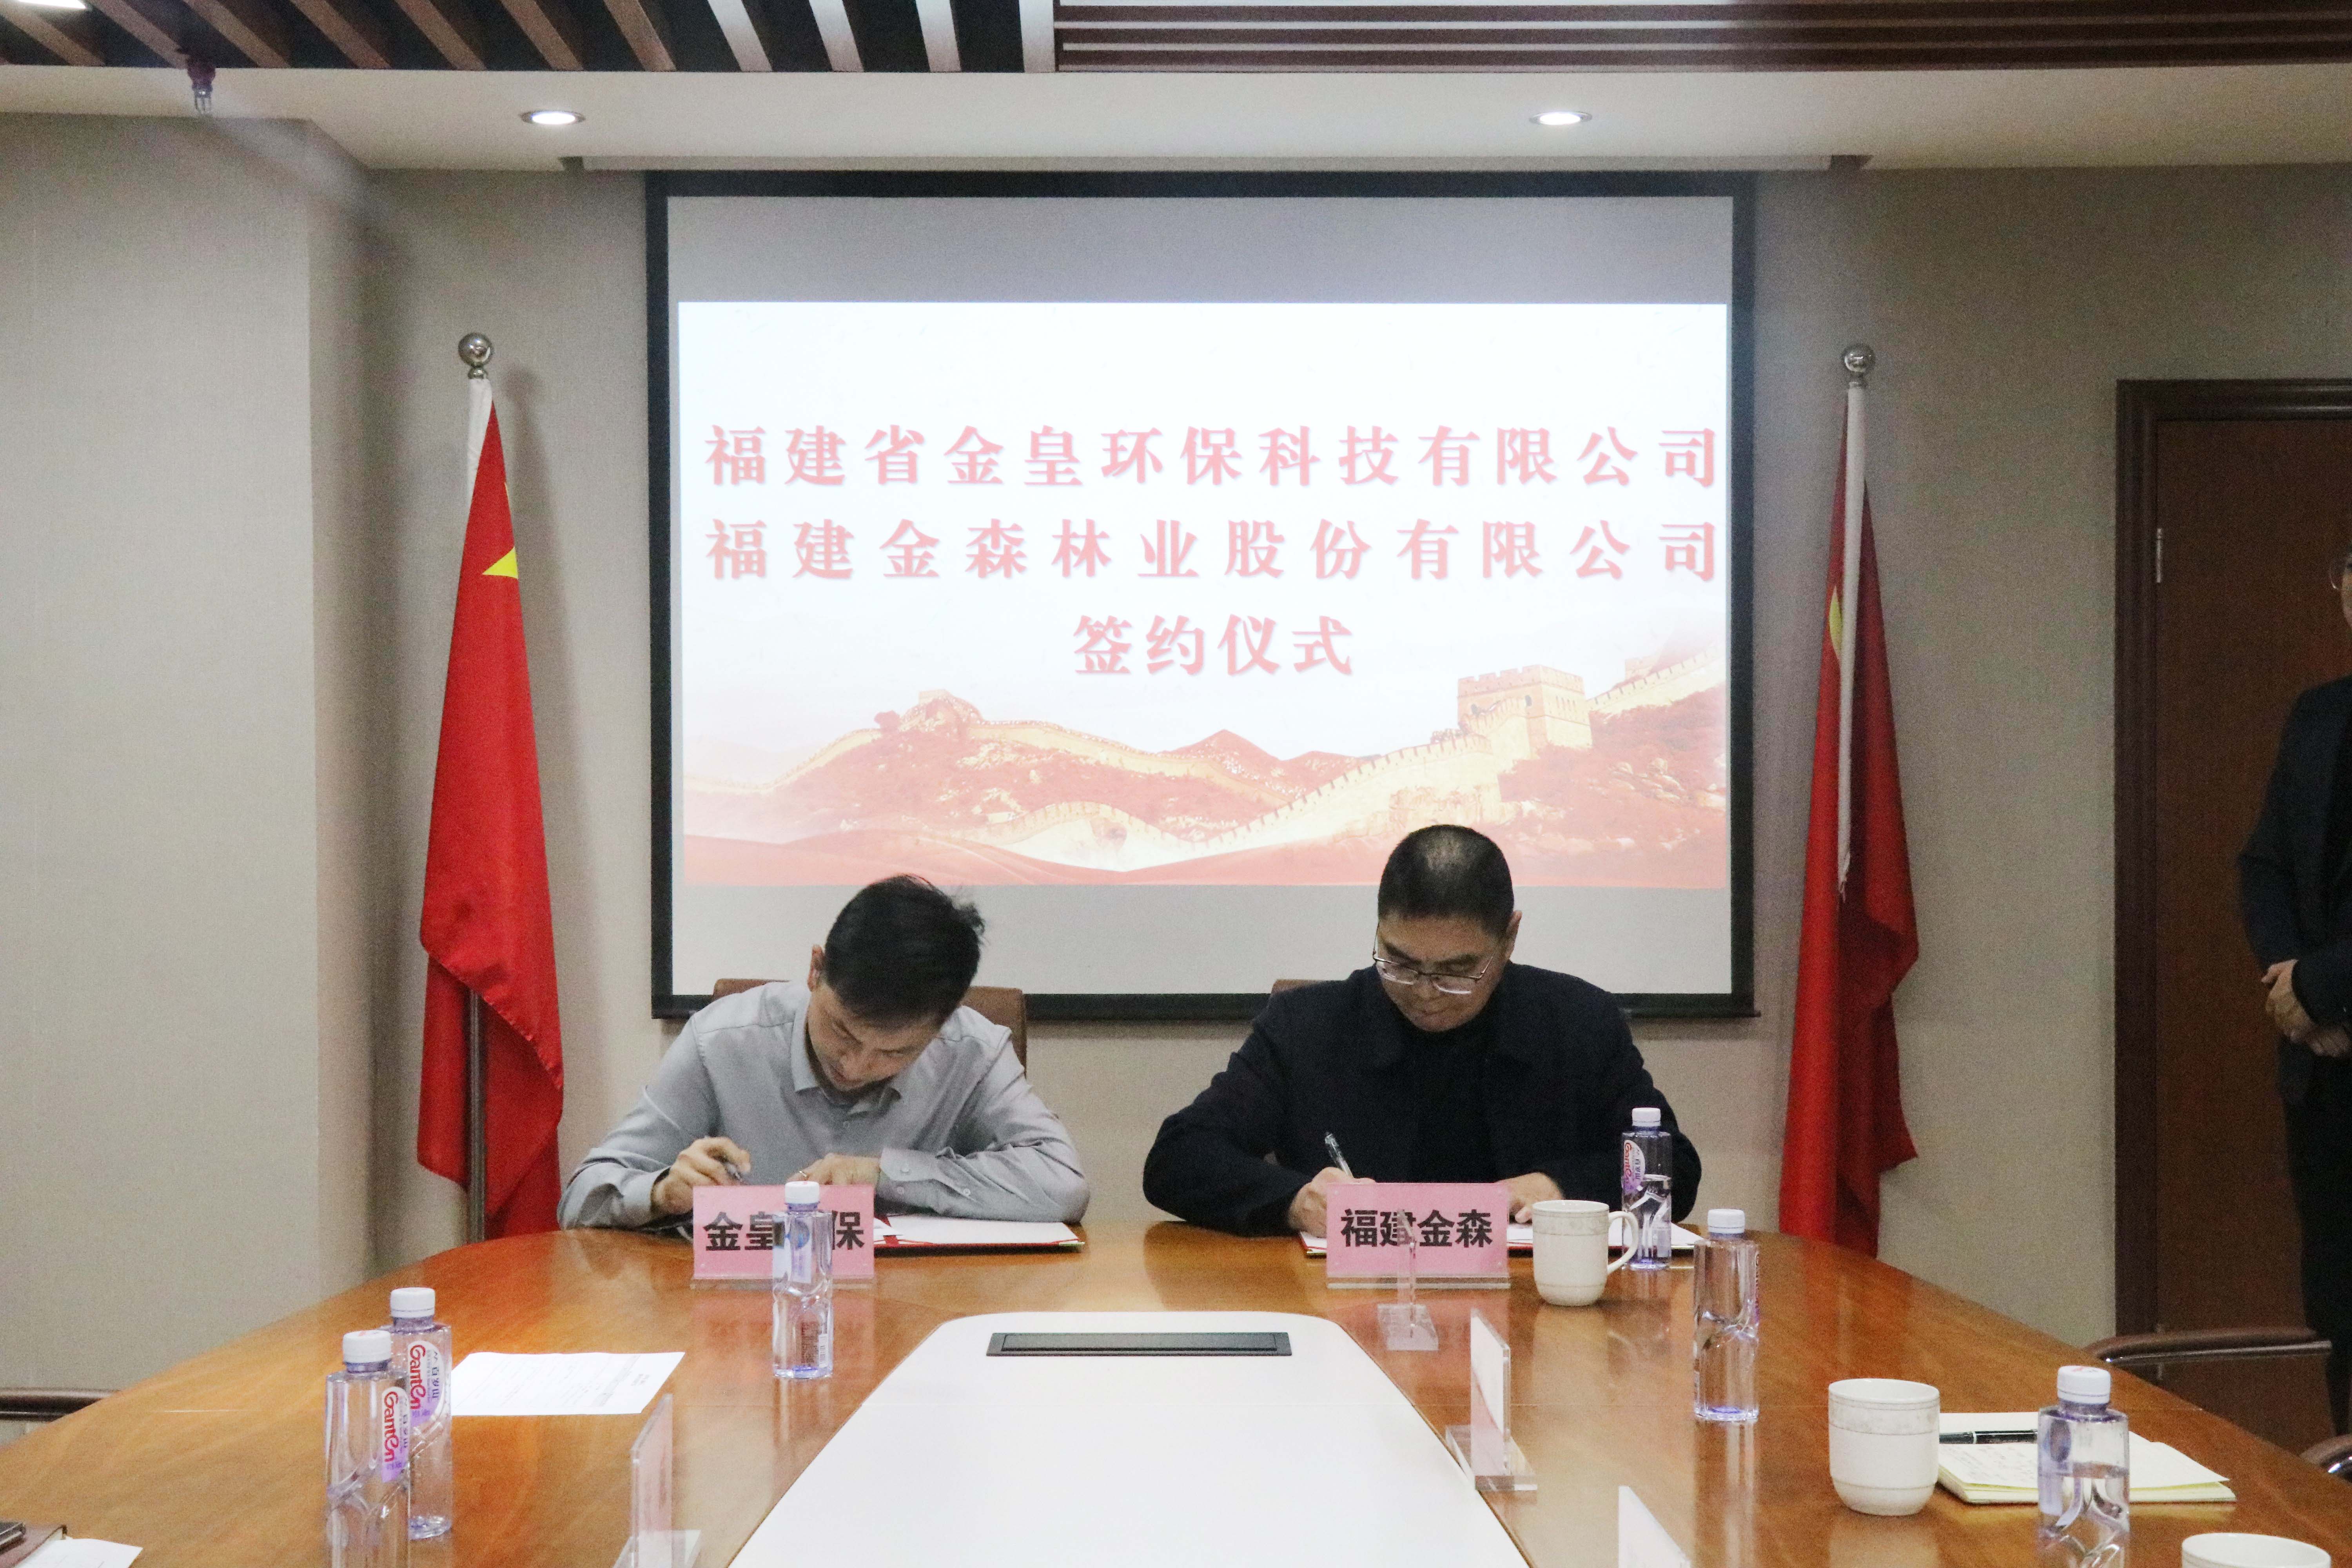 天博真人平台与福建省金皇环保科技有限公司 签署战略合作协议